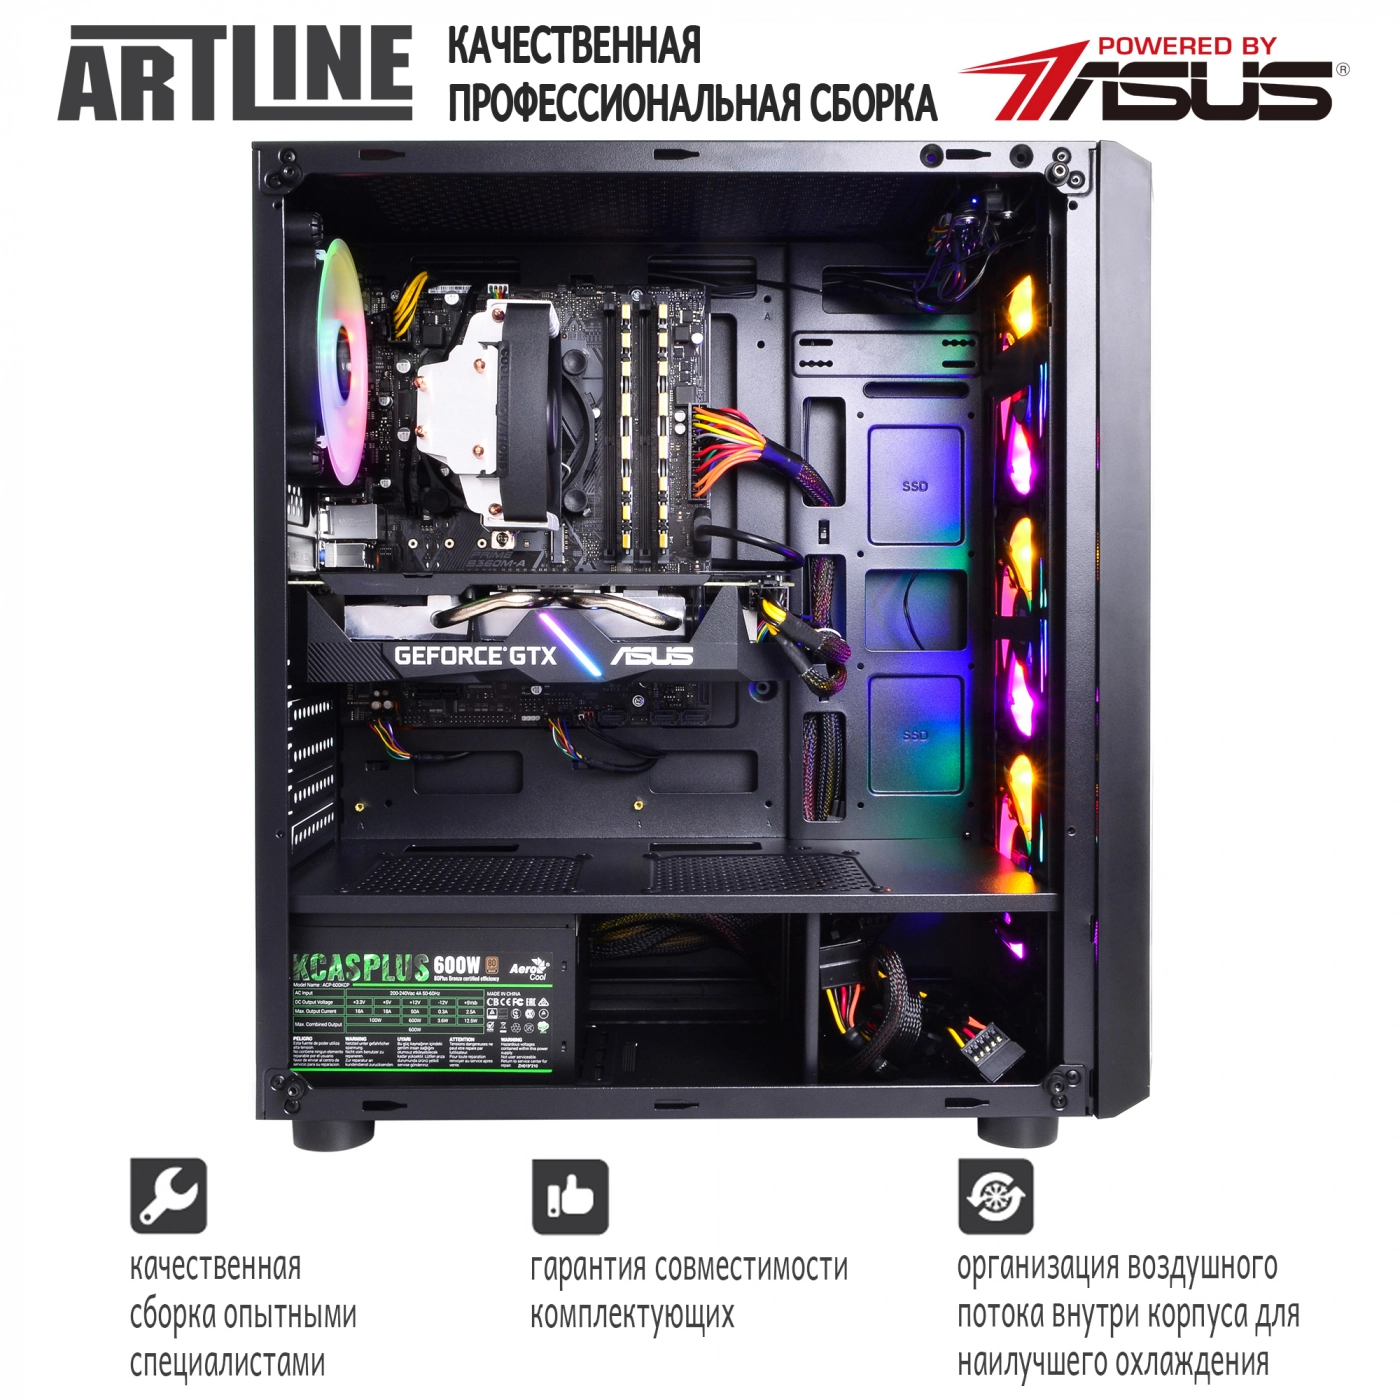 Купить Компьютер ARTLINE Gaming X53v17 - фото 9